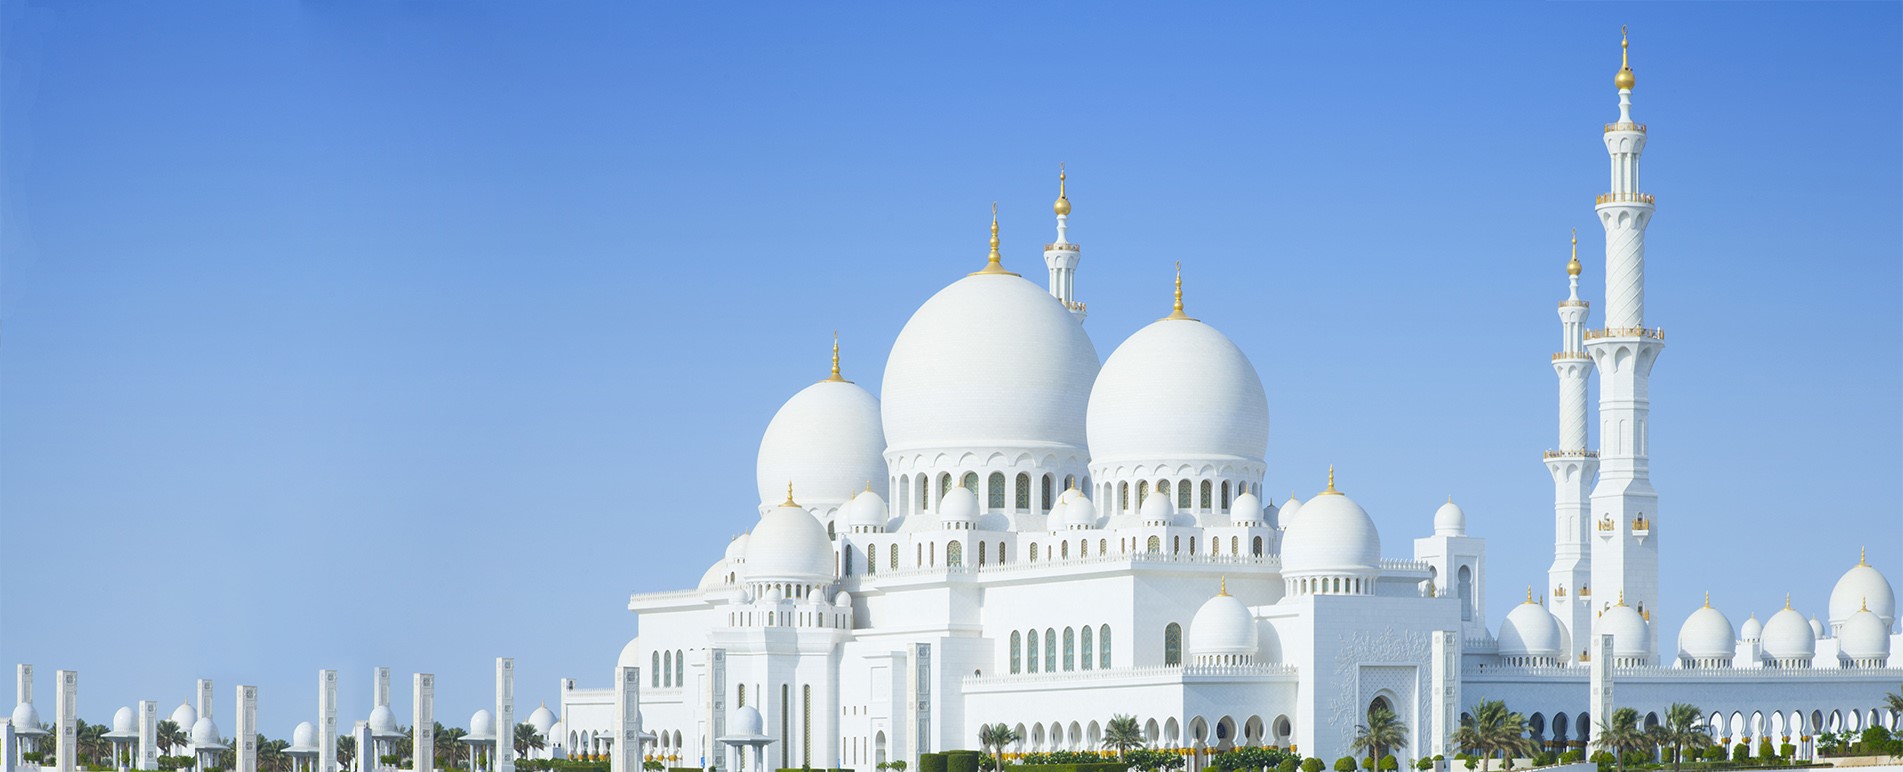 المساجد الذكية توفير استهلاك المكيف